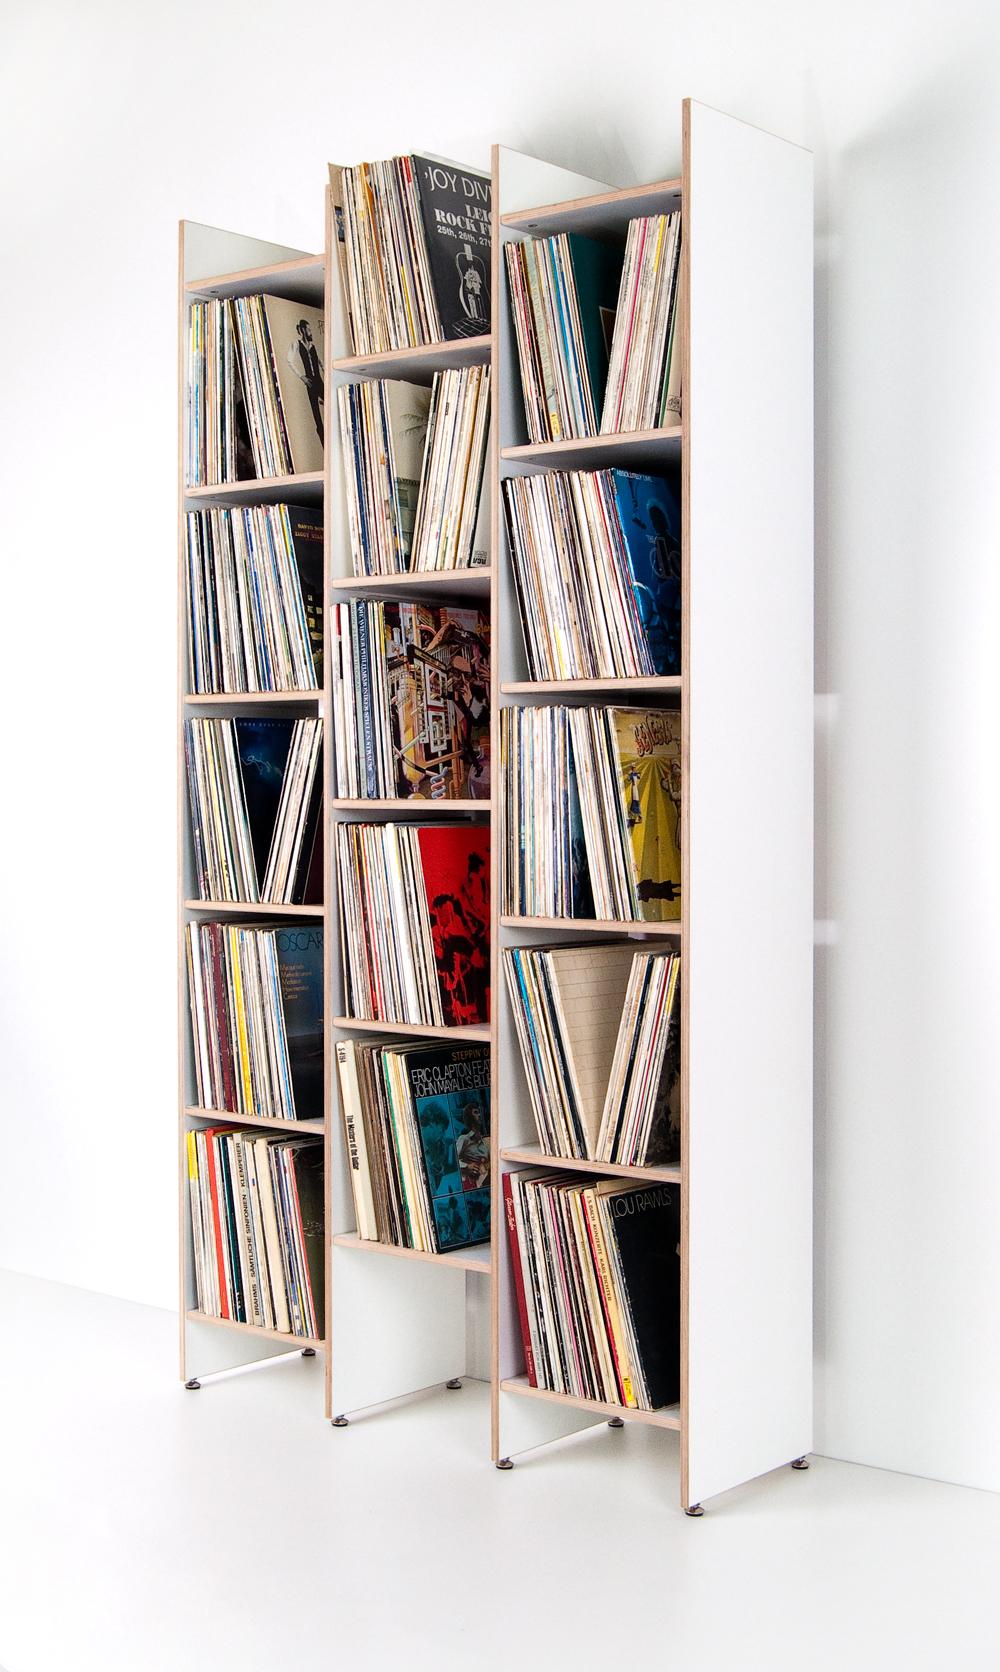 ORWE #regal aus Furnierschichtholz mit weißer Oberfläche. Platz für 1000+ #Schallplatten oder #Bücher und #Ordner.